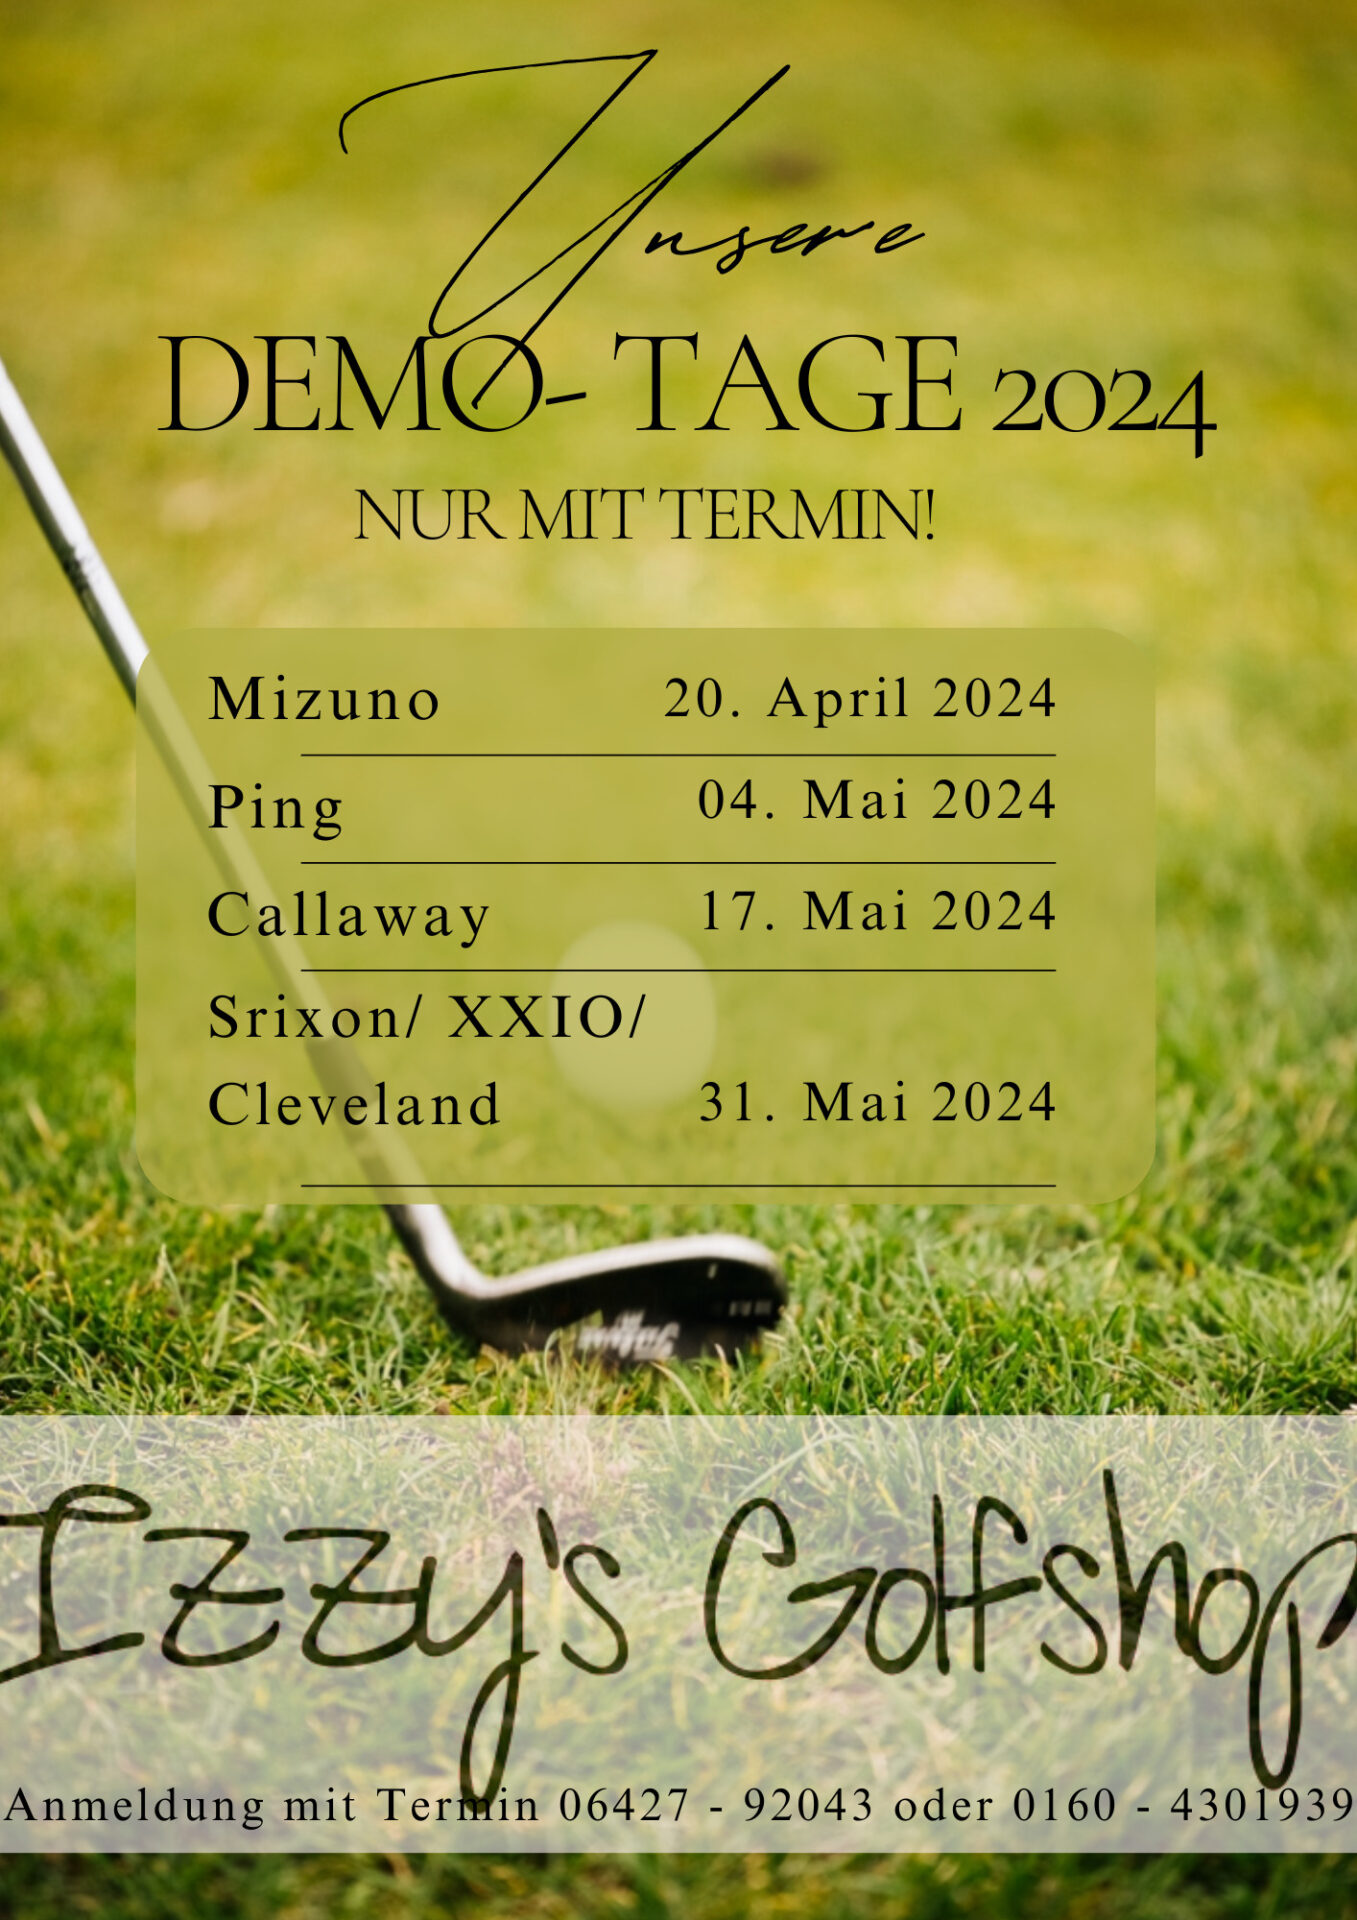 Demo Tage 2024 Izzy's Golfshop